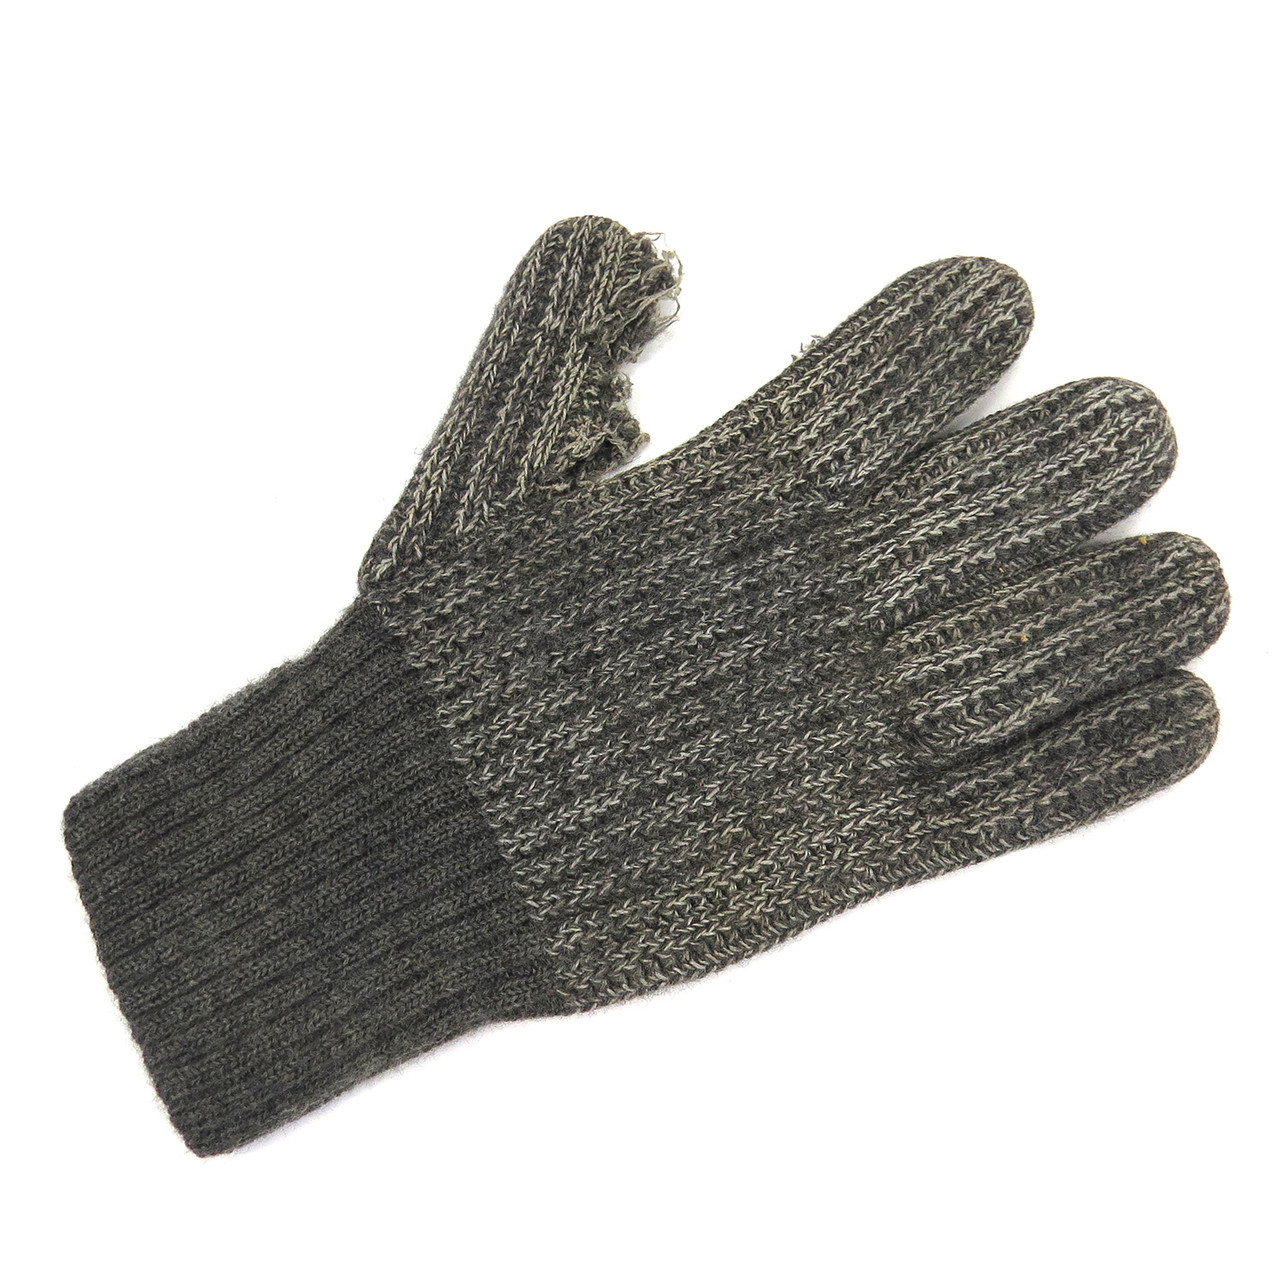 Copy of Original Wehrmacht Wool Glove - Sz. 2